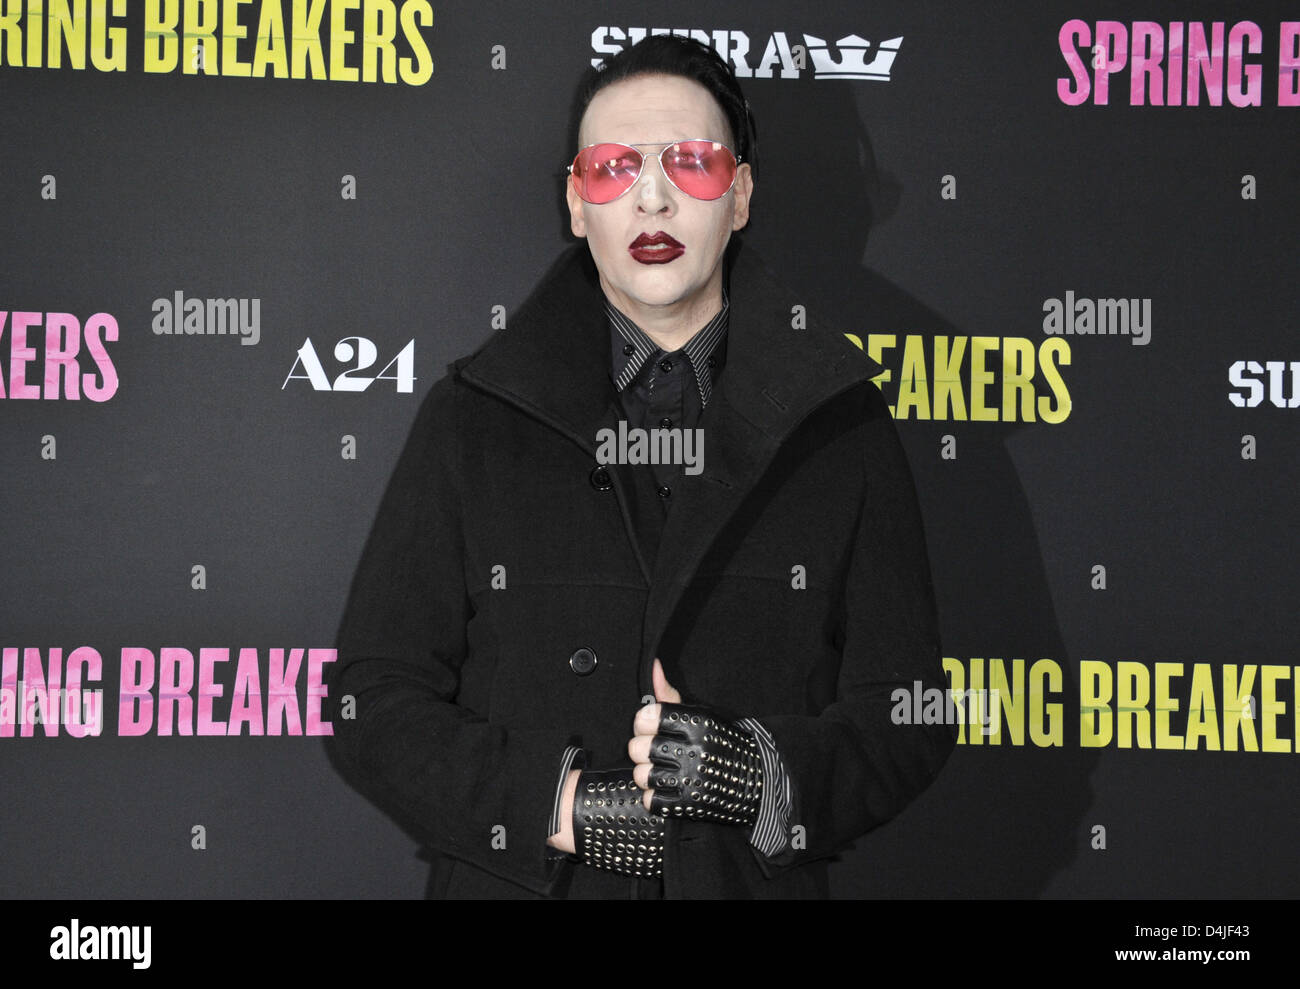 Los Angeles, Stati Uniti d'America. Il 14 marzo 2013. Marilyn Manson frequentando il Los Angeles Premiere di ''Spring Breakers" tenutosi presso la Arclight Glossari Affini cupola in Hollywood, la California il 14 marzo 2013. 2013.(Immagine di credito: credito: D. lunga/Globe foto/ZUMAPRESS.com/Alamy Live News) Foto Stock